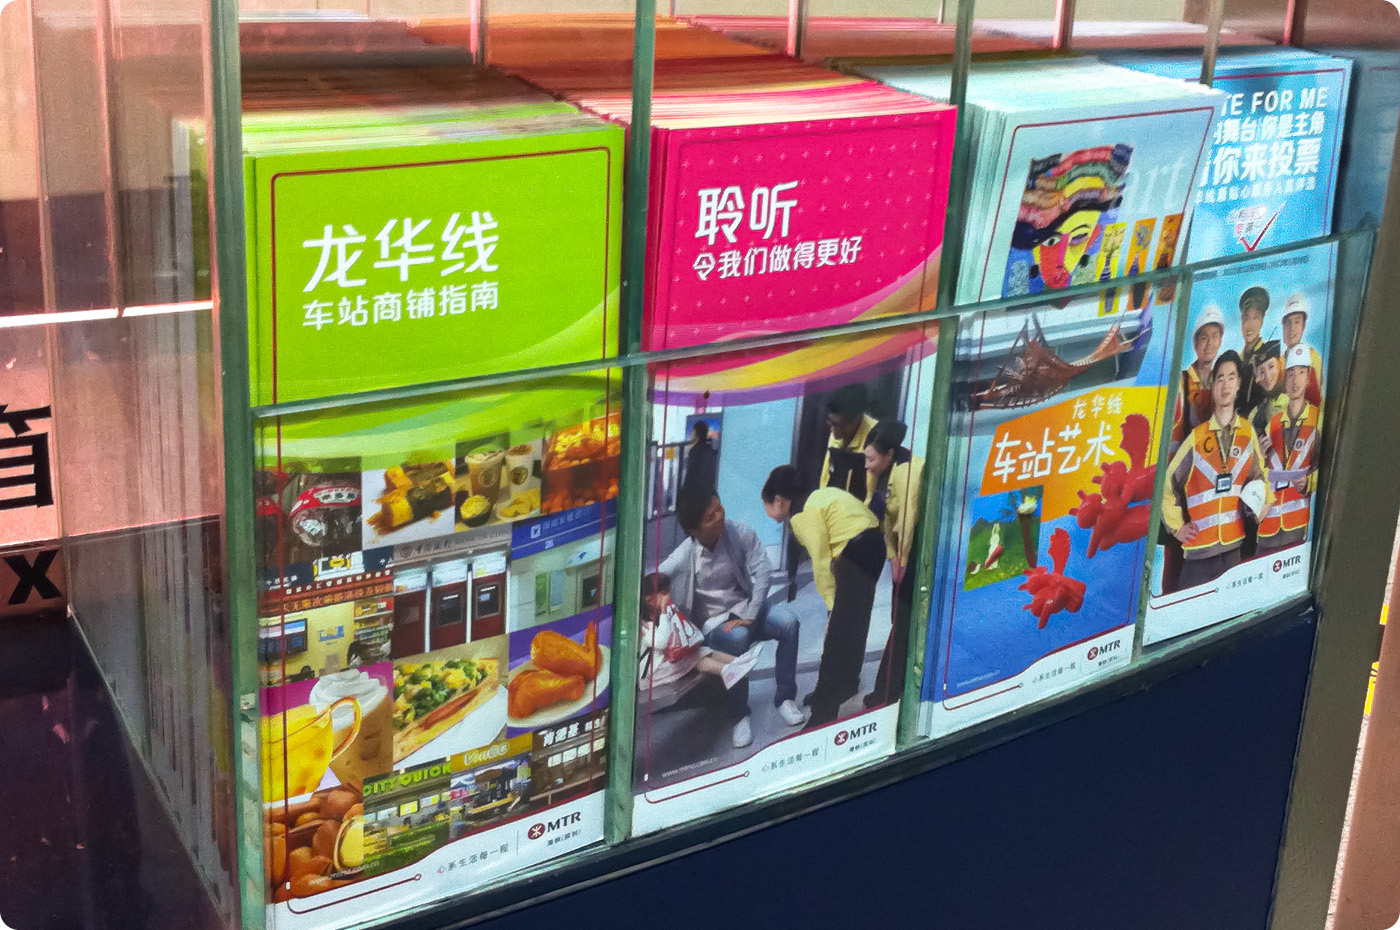 MTR Corporation (Shenzhen) Limited Promotional Leaflet Design